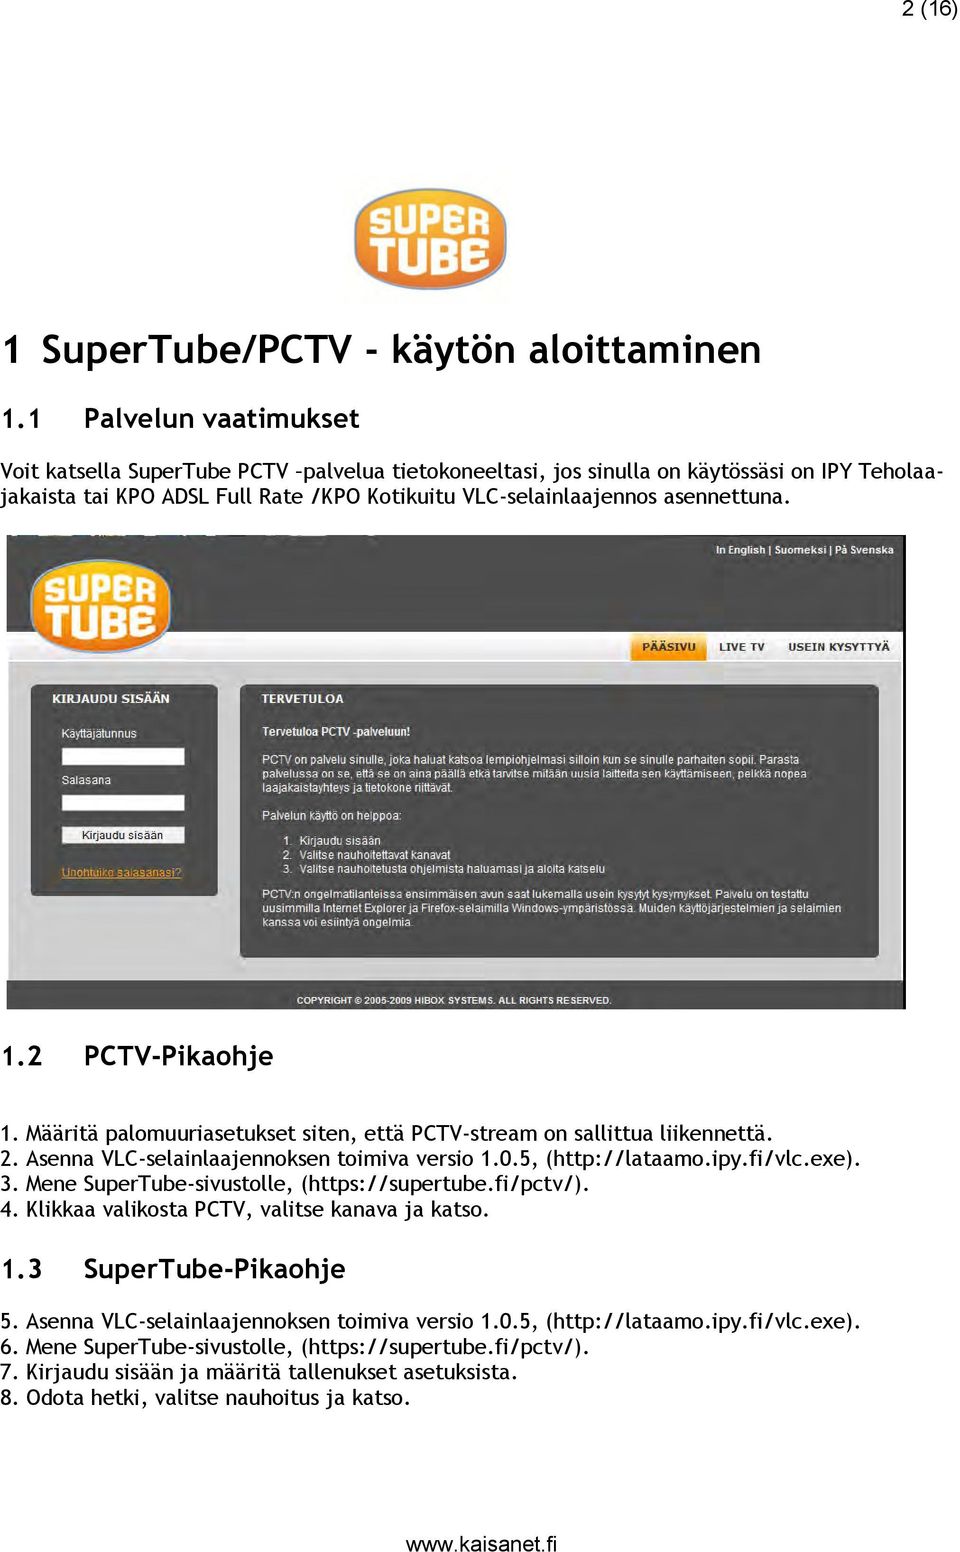 2 PCTV-Pikaohje 1. Määritä palomuuriasetukset siten, että PCTV-stream on sallittua liikennettä. 2. Asenna VLC-selainlaajennoksen toimiva versio 1.0.5, (http://lataamo.ipy.fi/vlc.exe). 3.